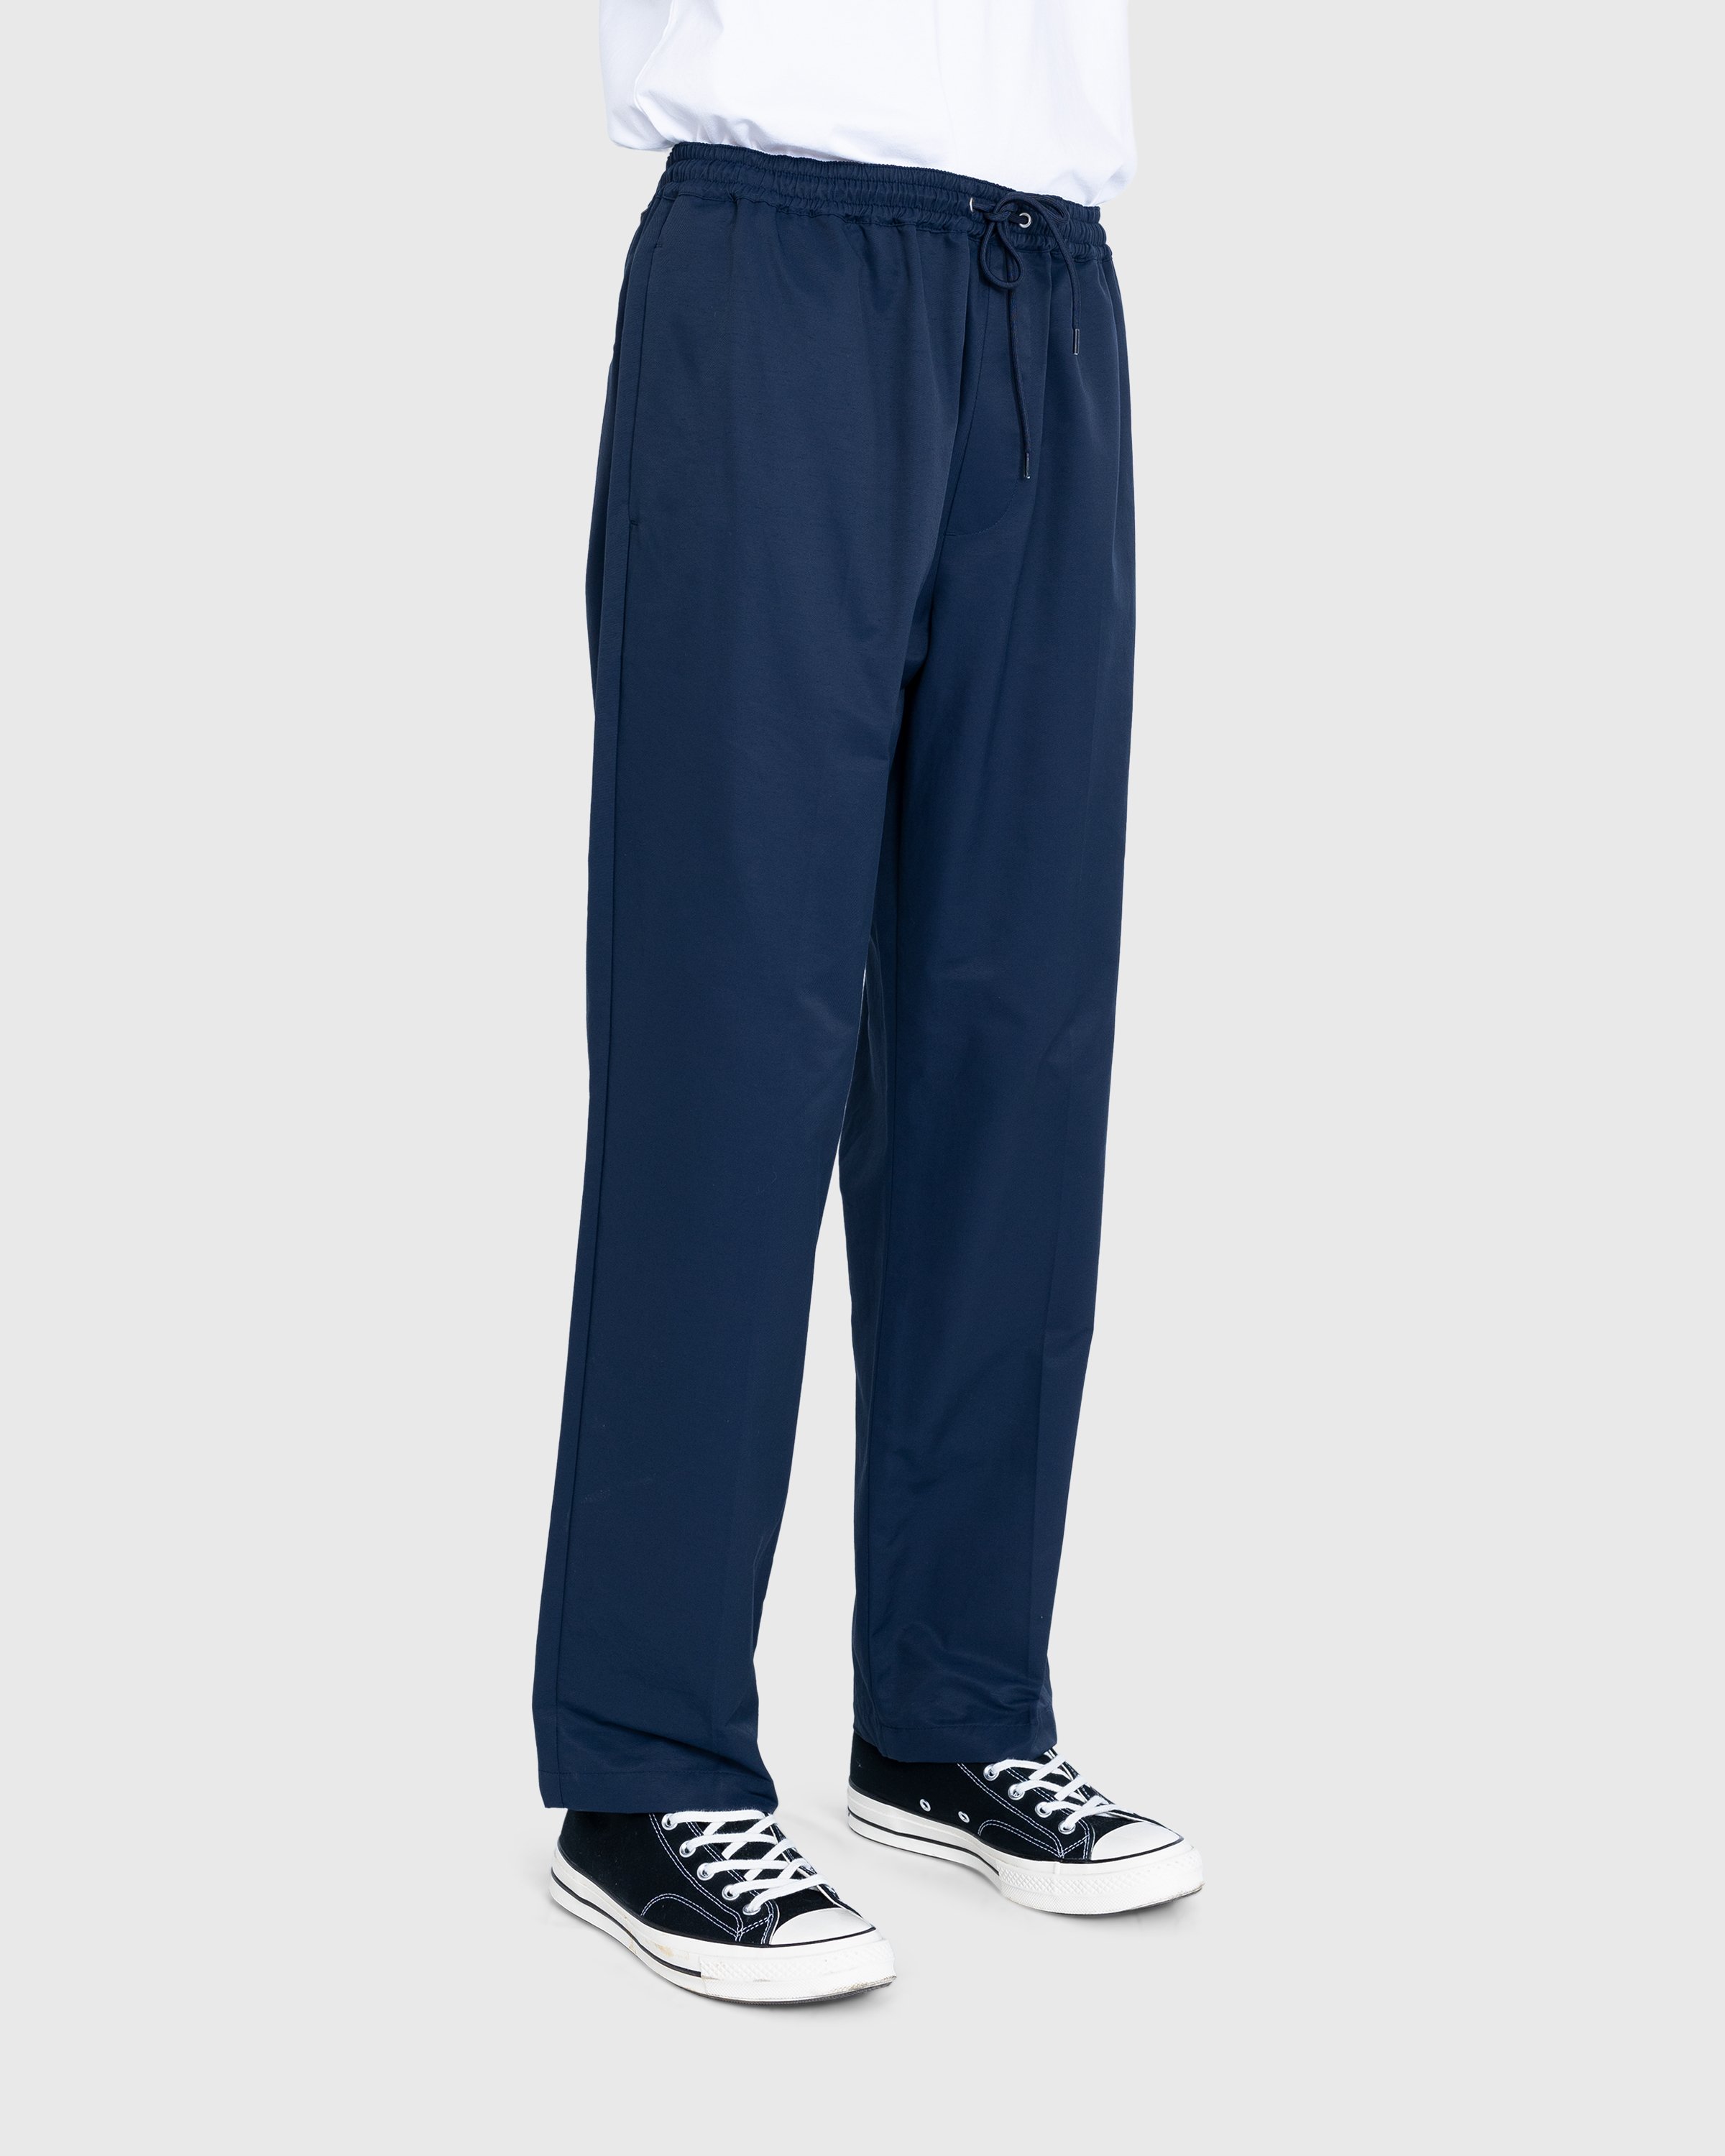 Highsnobiety - Cotton Nylon Elastic Pants Navy - Clothing - Blue - Image 3